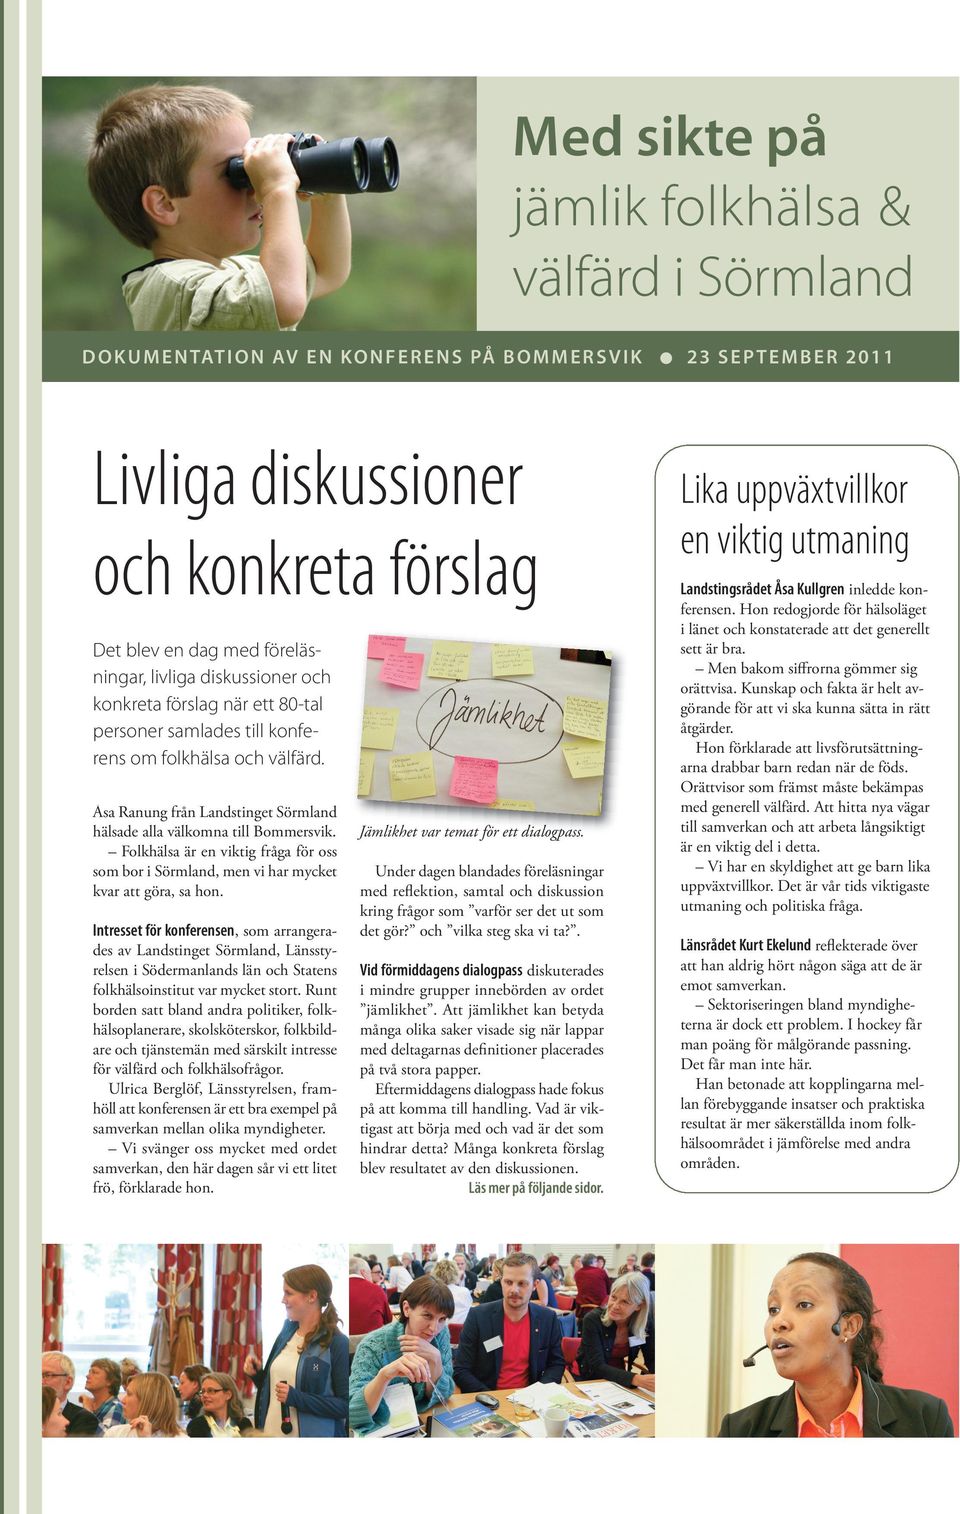 Åsa Ranung från Landstinget Sörmland hälsade alla välkomna till Bommersvik. Folkhälsa är en viktig fråga för oss som bor i Sörmland, men vi har mycket kvar att göra, sa hon.